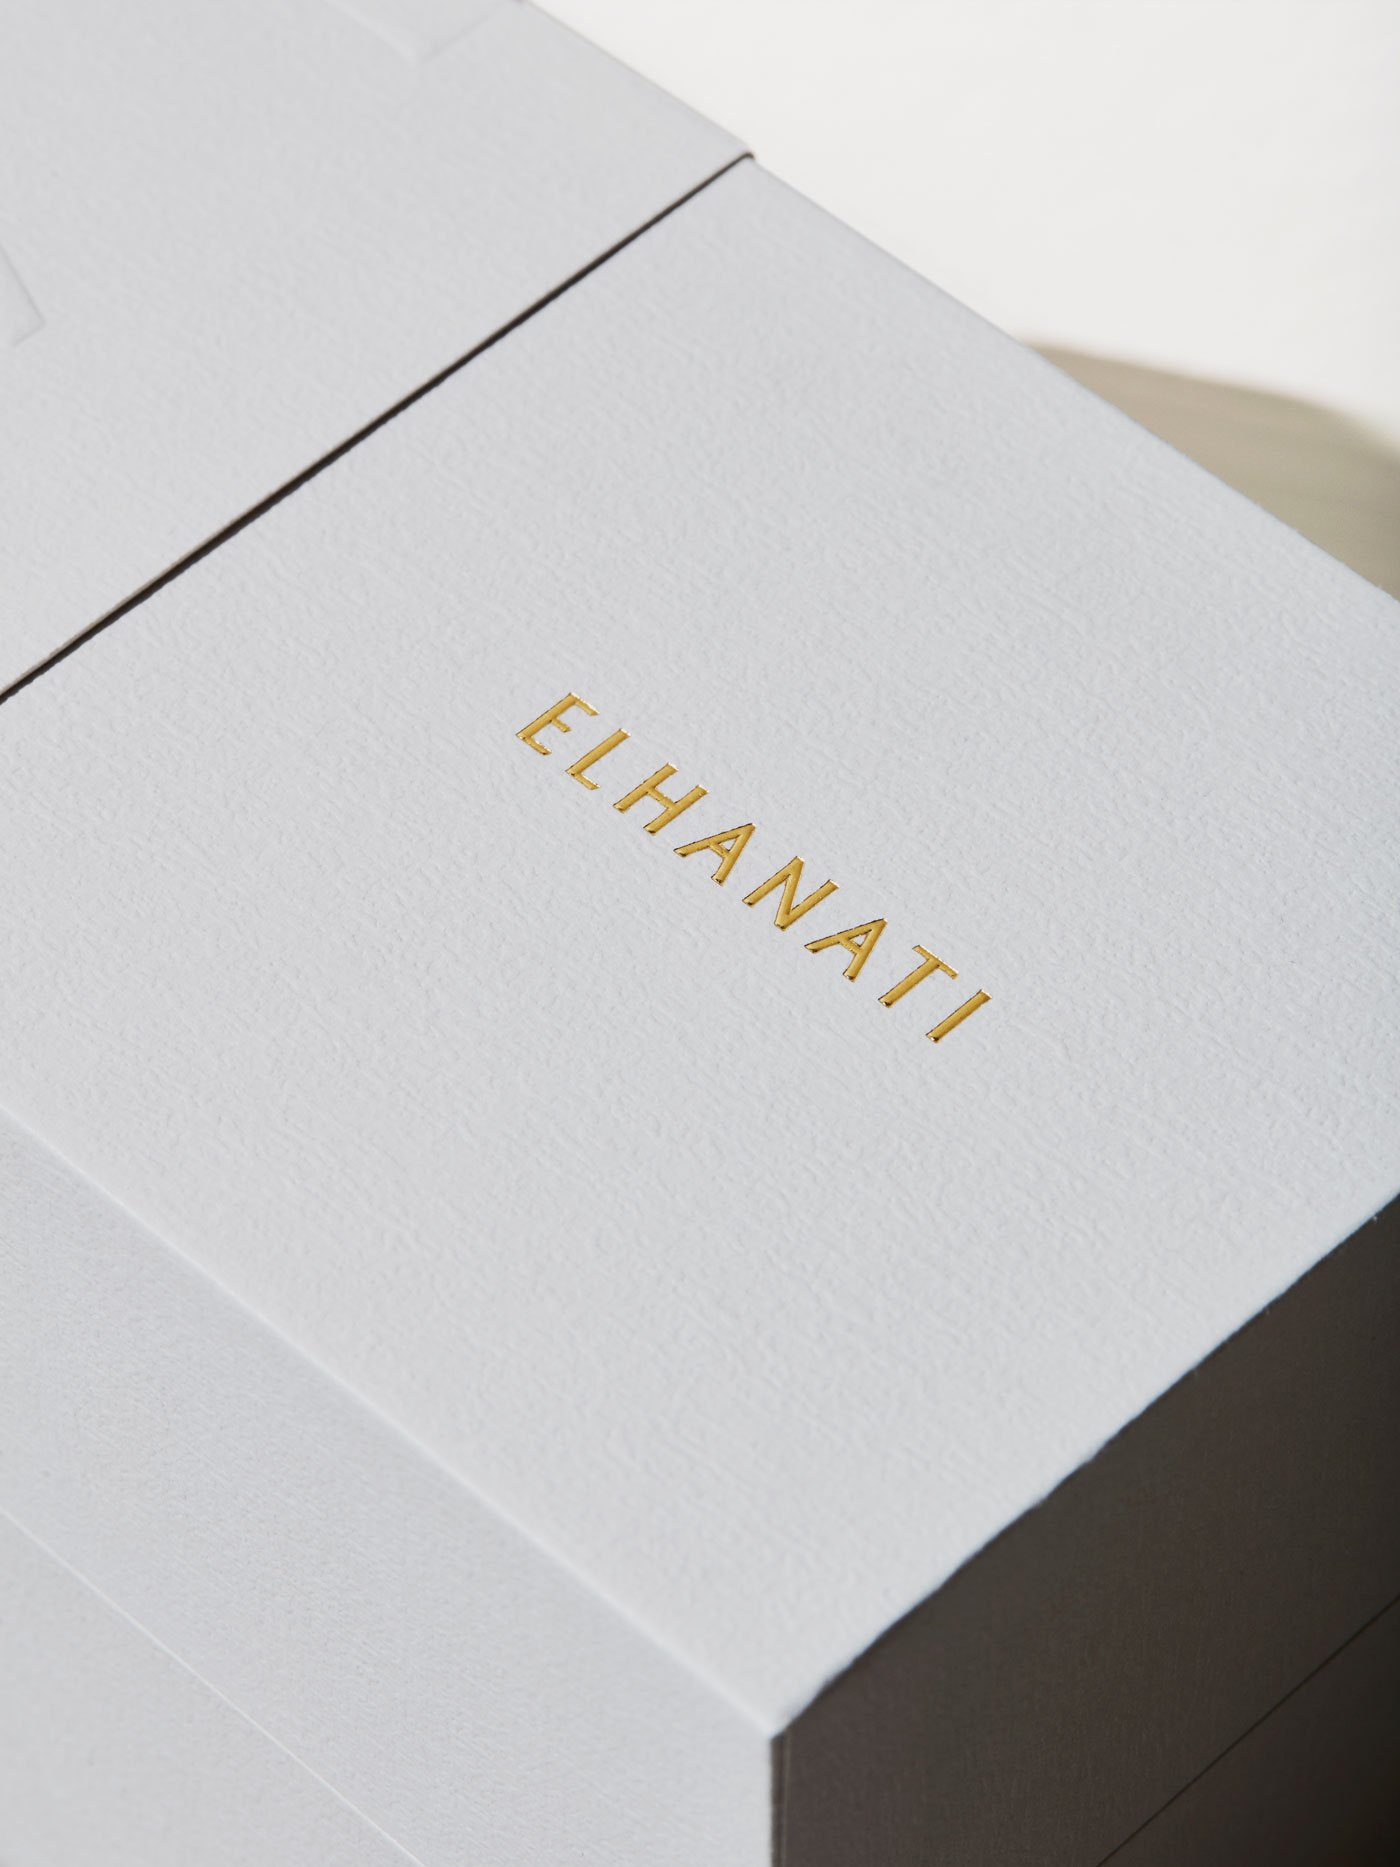 Elhanati – Packaging jewelry box